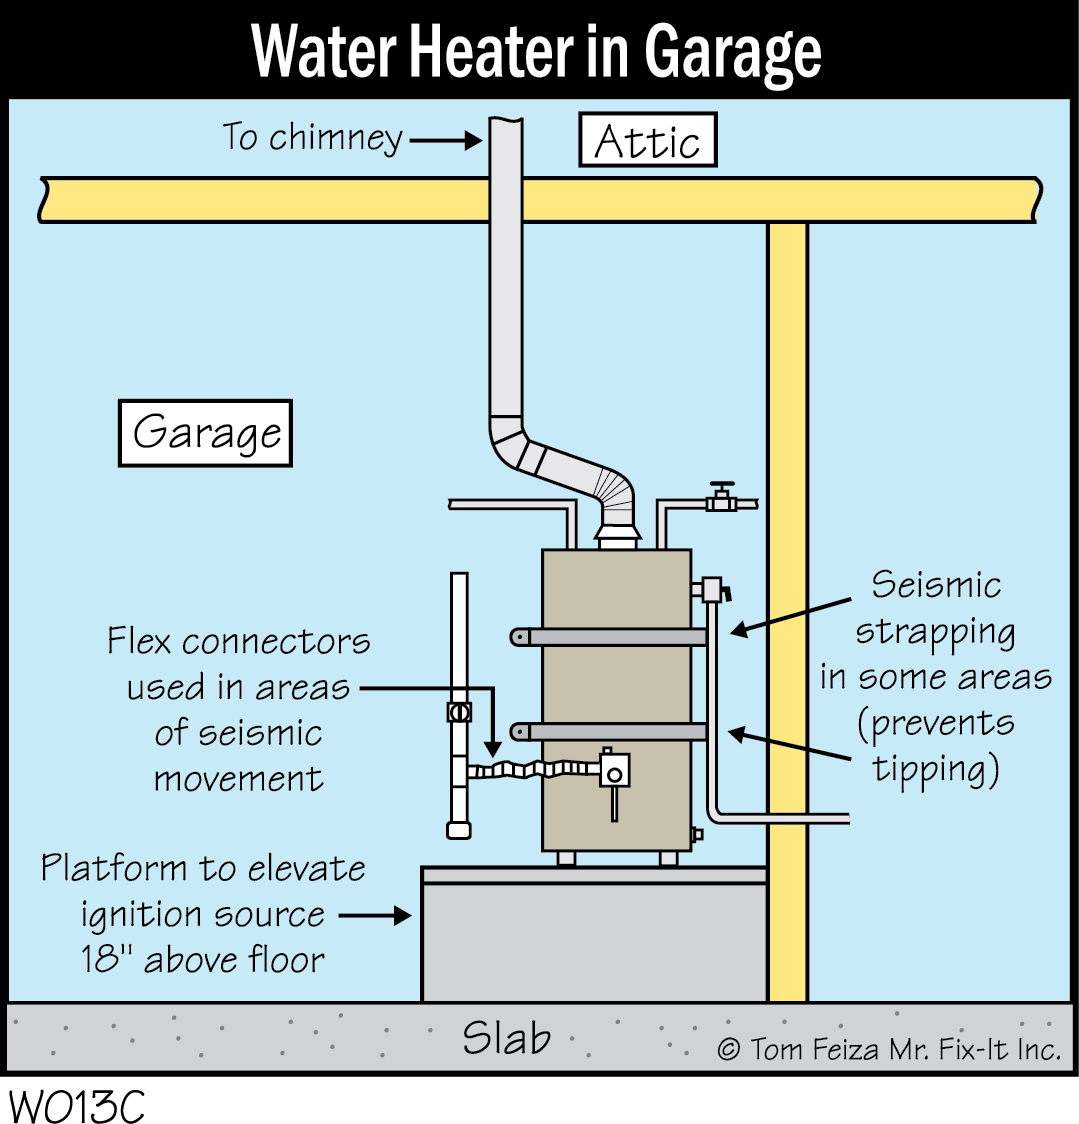 W013C - Water Heater in Garage